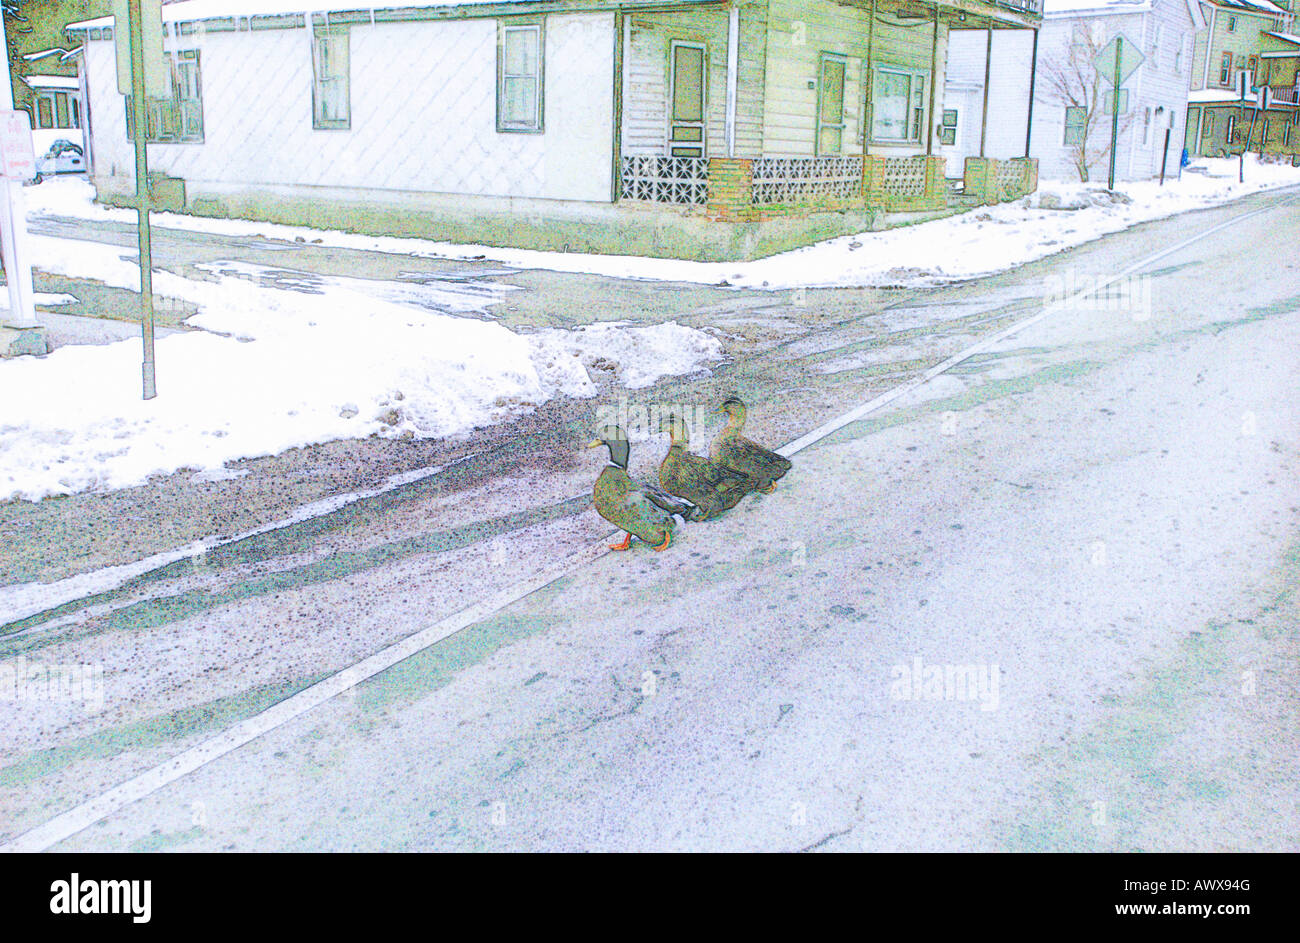 In modo digitale immagine alterata di anatre attraversando la strada in piccole città NJ in inverno Foto Stock